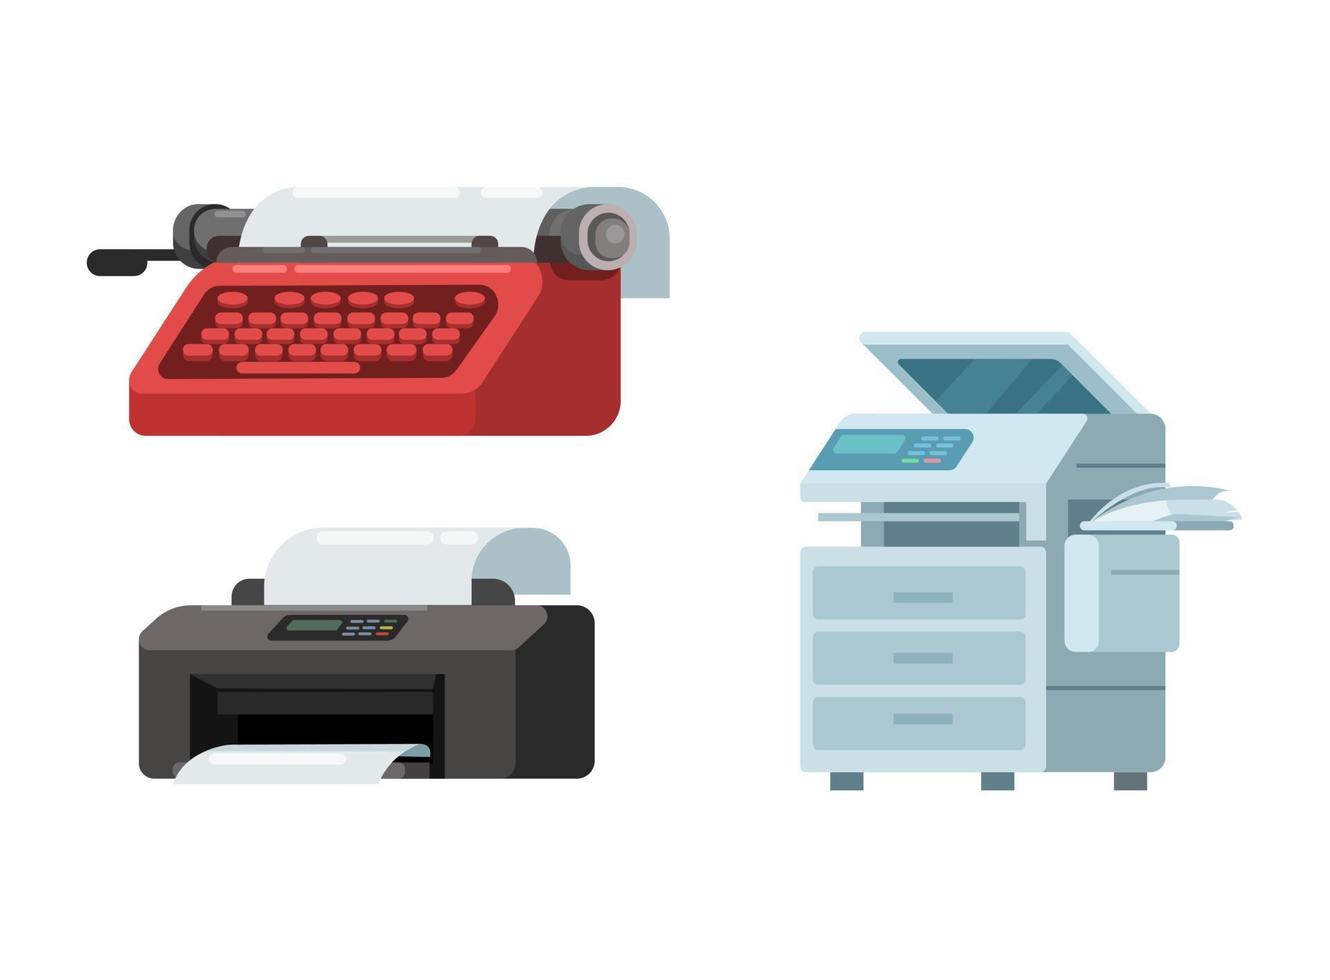 máquina de escrever vintage, impressora e máquina de fotocópia conjunto ilustração vetor